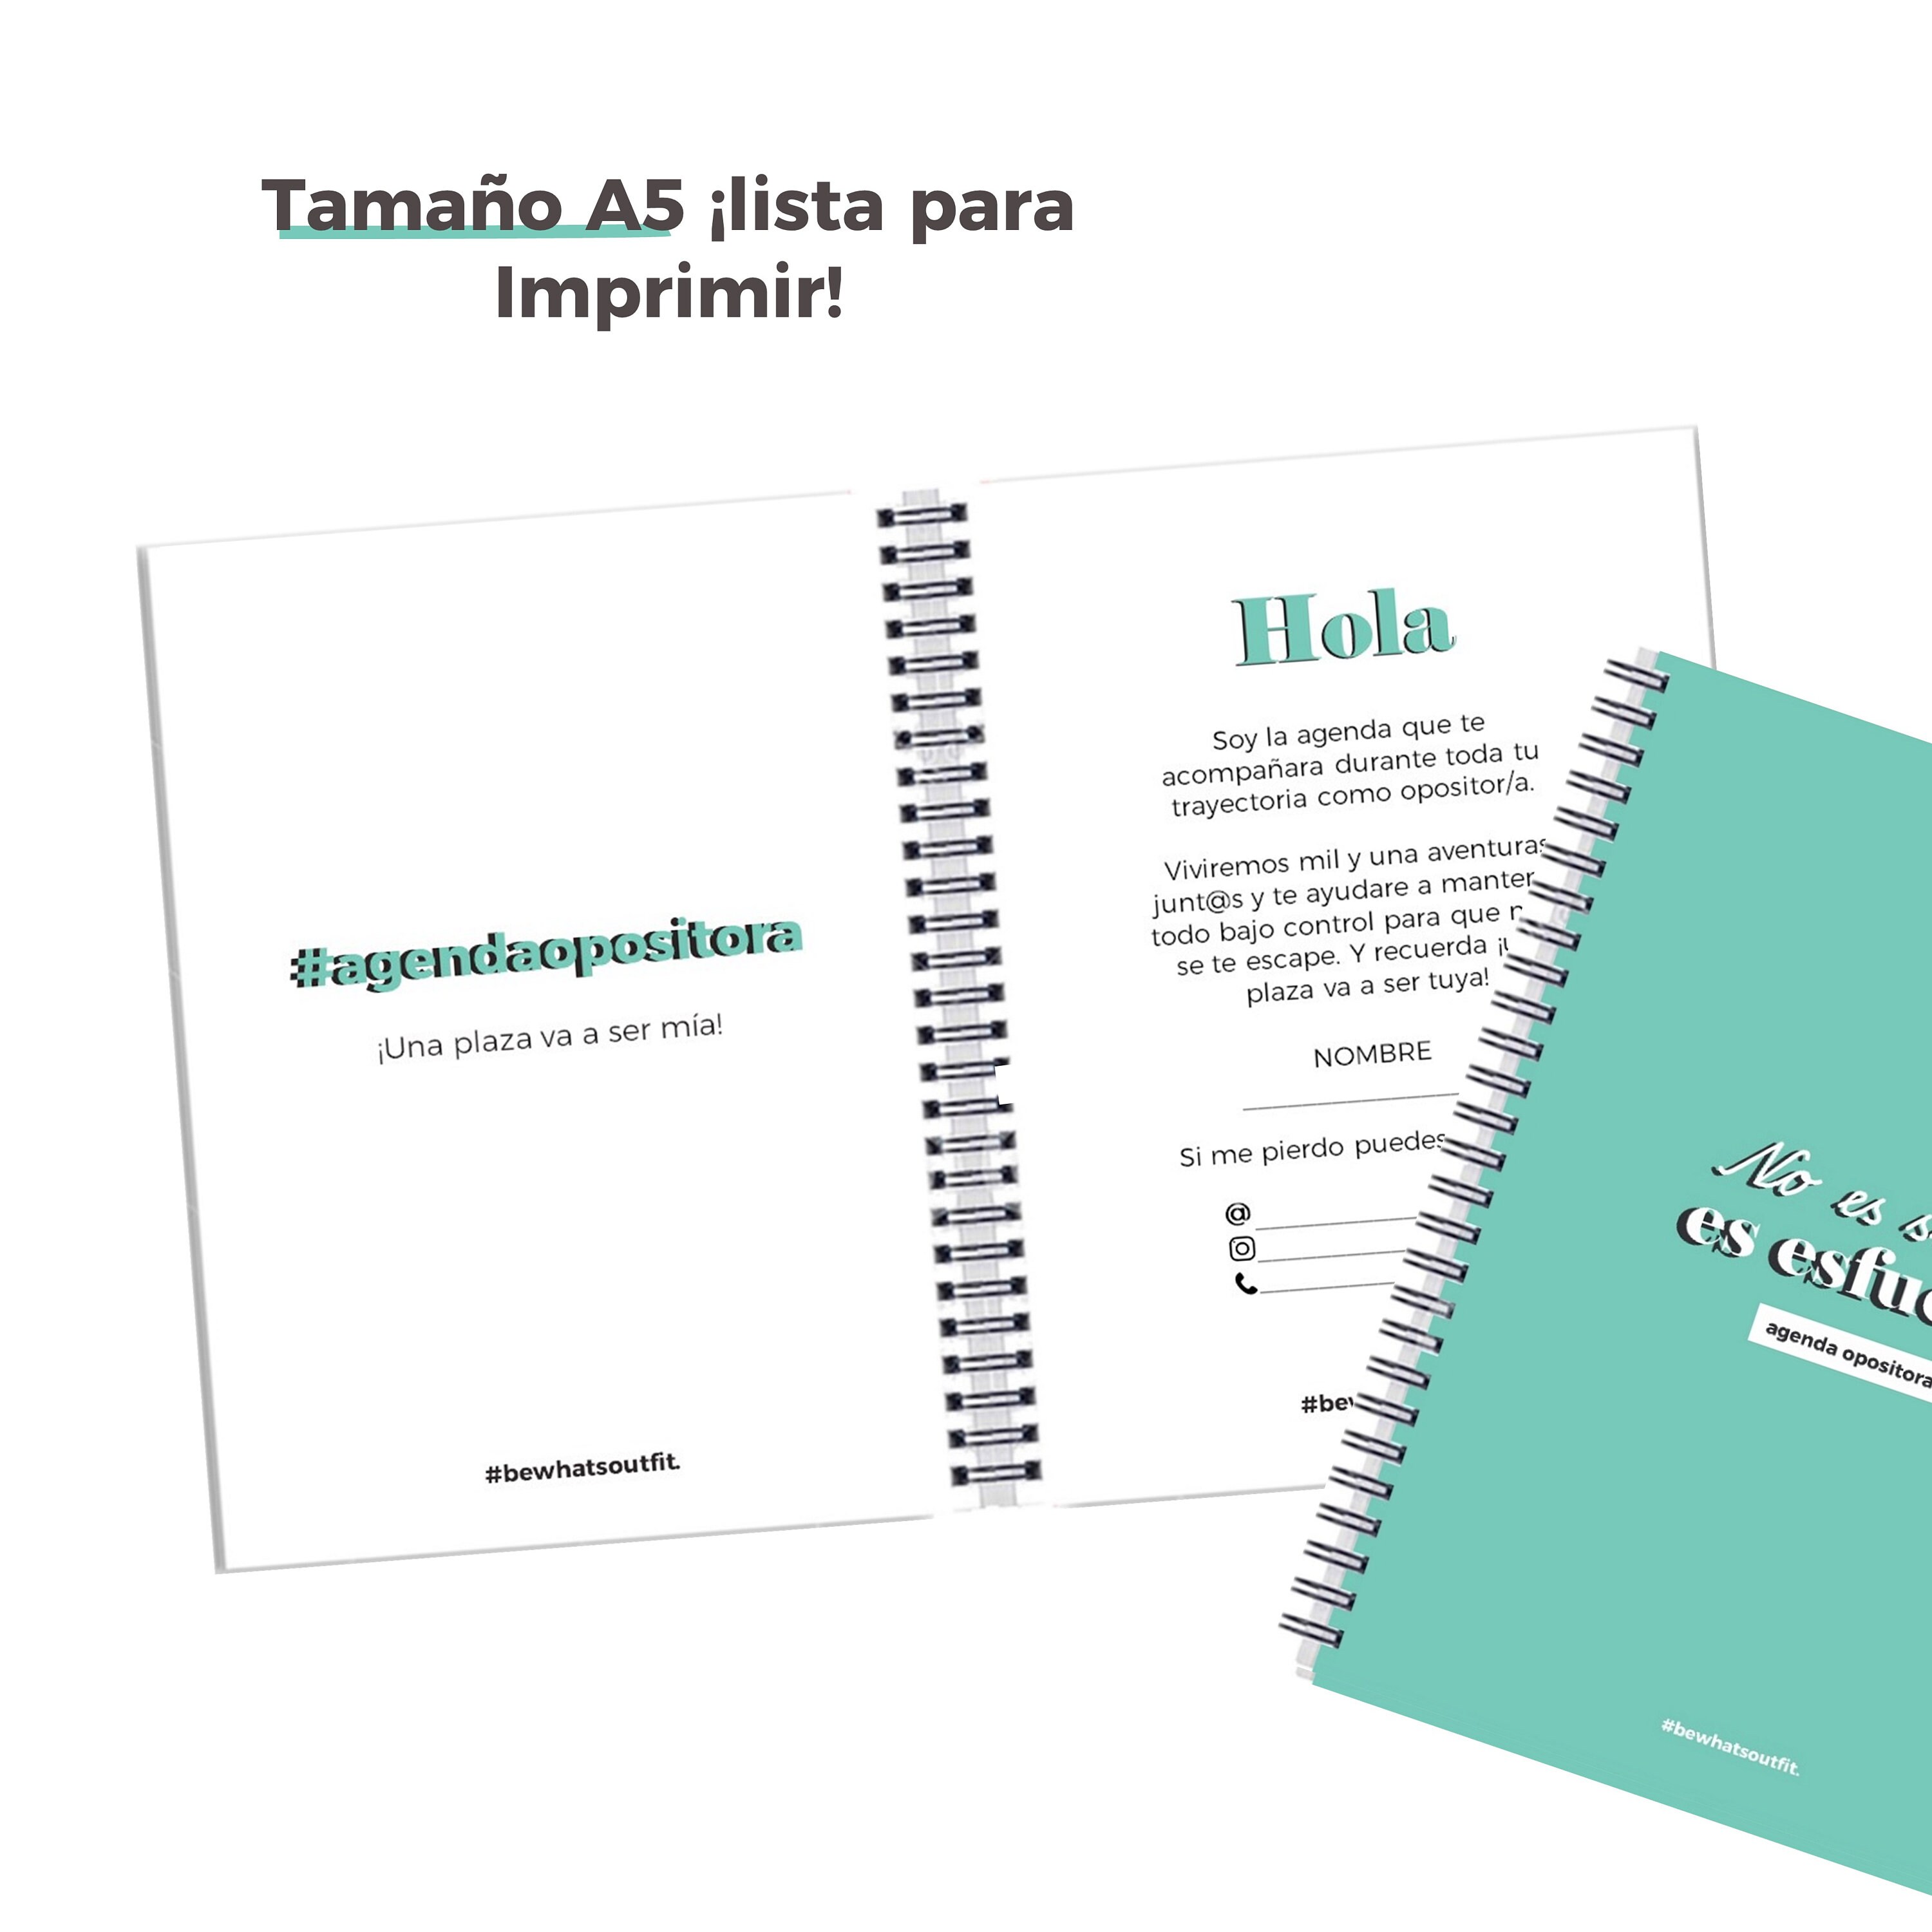  Planificador del opositor: Agenda para la organizacion y  estudio de tu oposición. (PLANIFICADORES OPOSICIONES) (Spanish Edition):  Teja, Ediciones: Libros